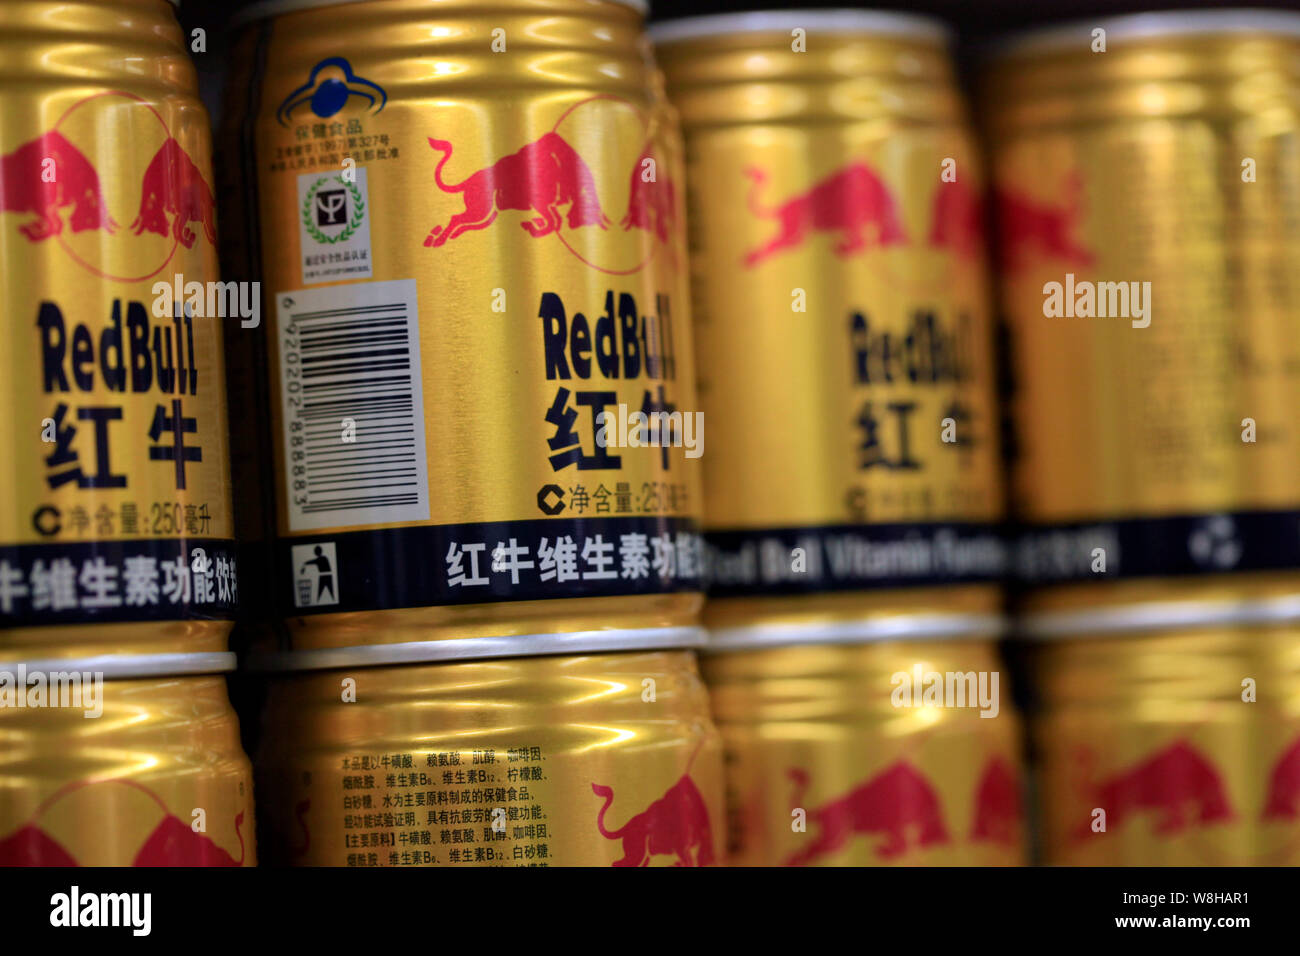 ------ Dosen Red Bull Energy Drink auf einem Regal im Supermarkt sind dargestellt in Anyang City, Central China Provinz Henan, 20. Oktober 2014. Die Stockfoto